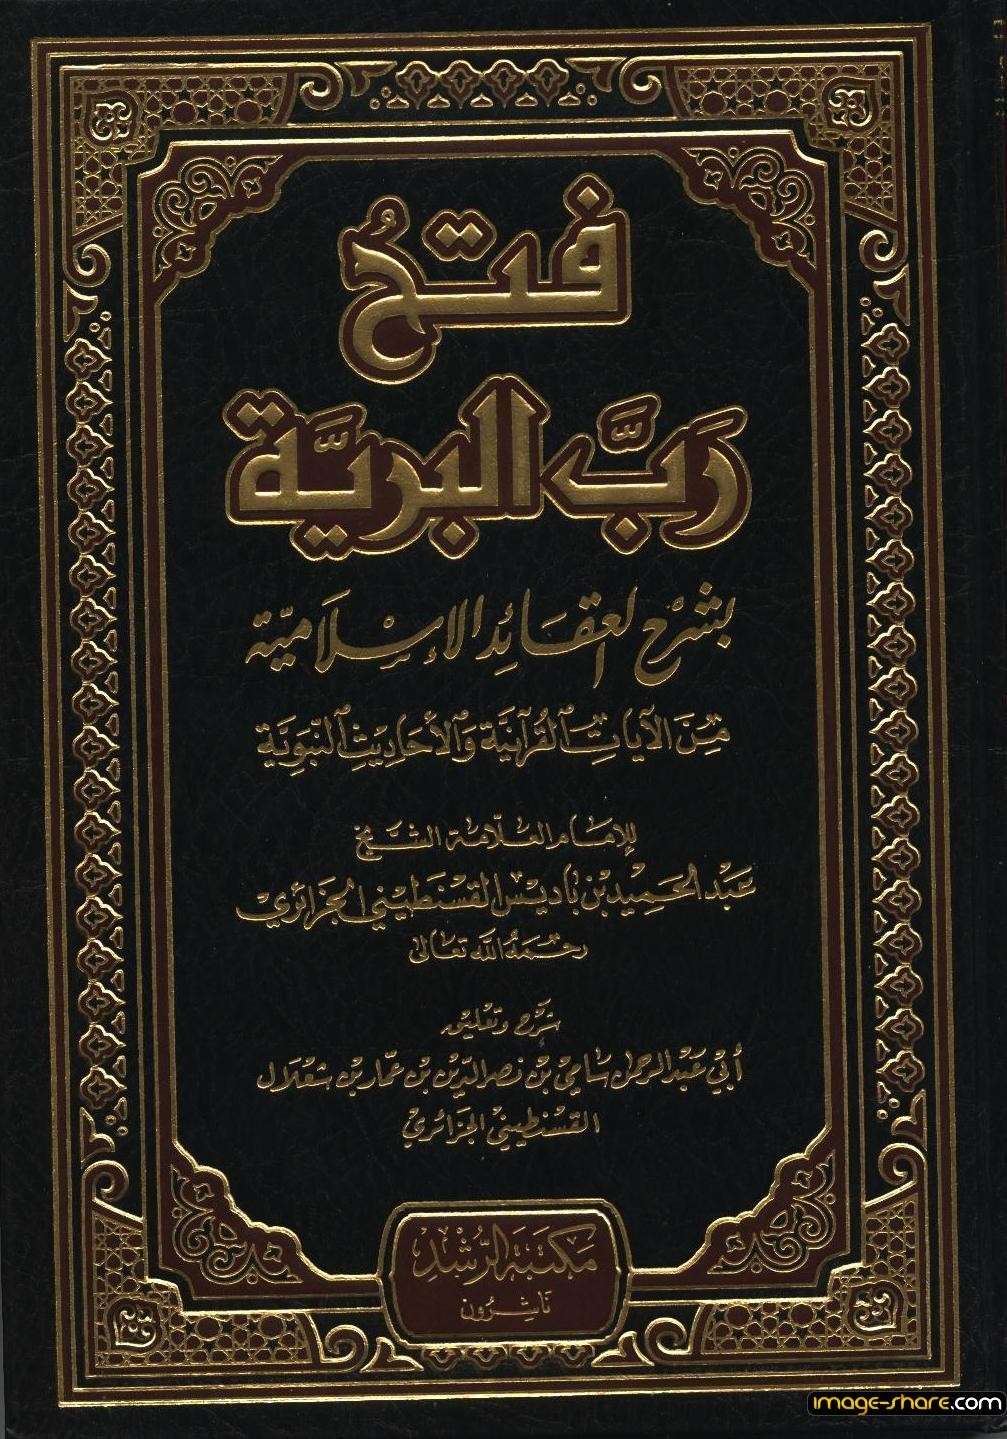 كتاب : العقائد الإسلامية من الآيات القرآنية و الأحاديث النبوية(للإمام العلامة ابن باديس) 16410